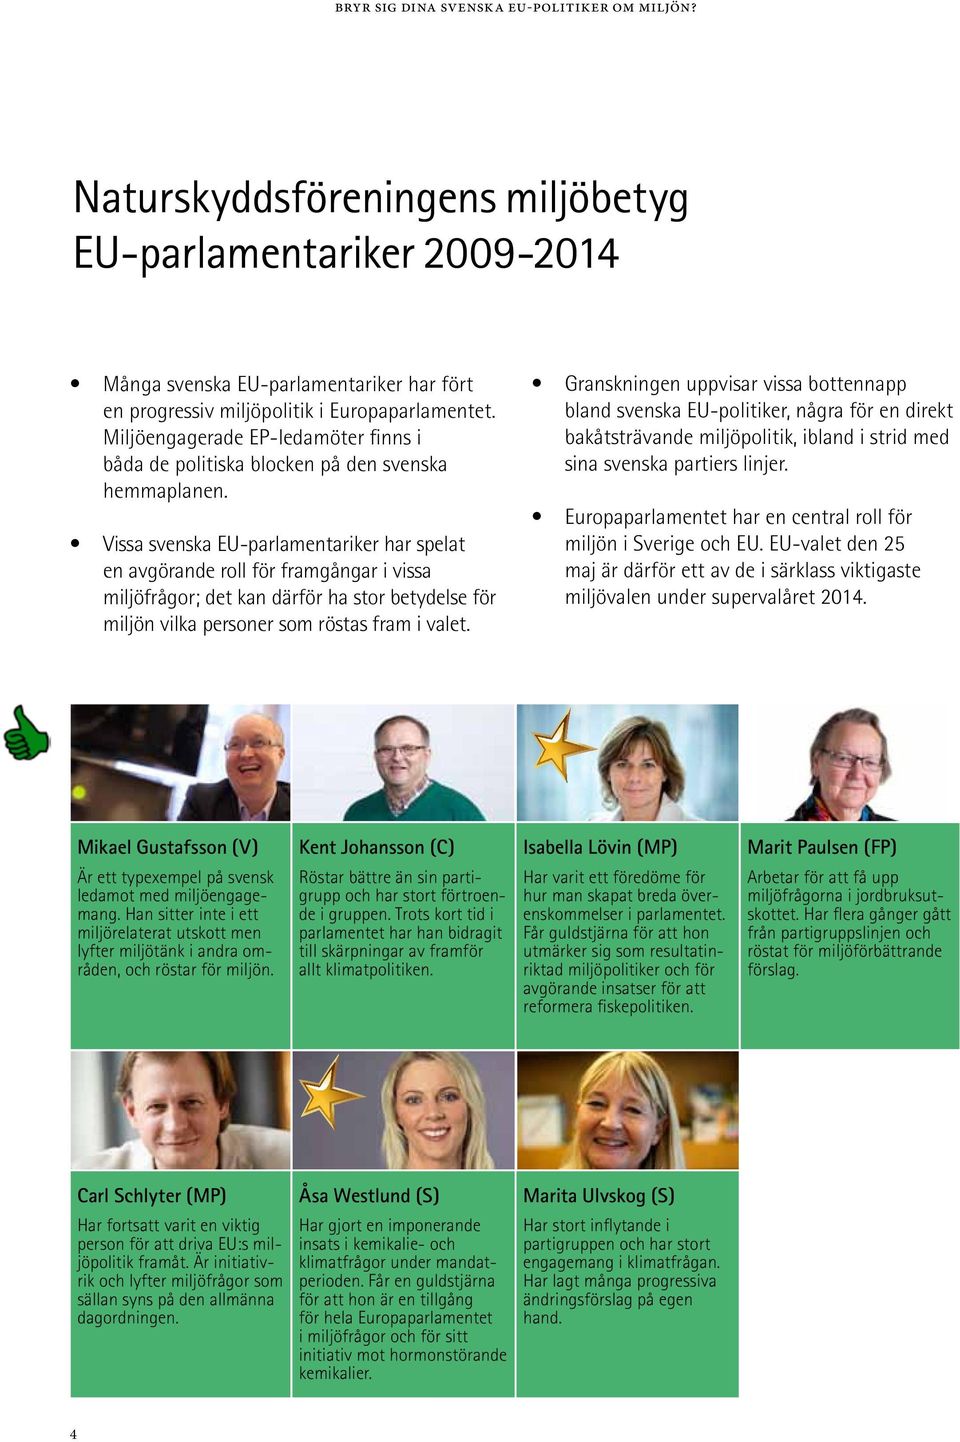 Vissa svenska EU-parlamentariker har spelat en avgörande roll för framgångar i vissa miljöfrågor; det kan därför ha stor betydelse för miljön vilka personer som röstas fram i valet.